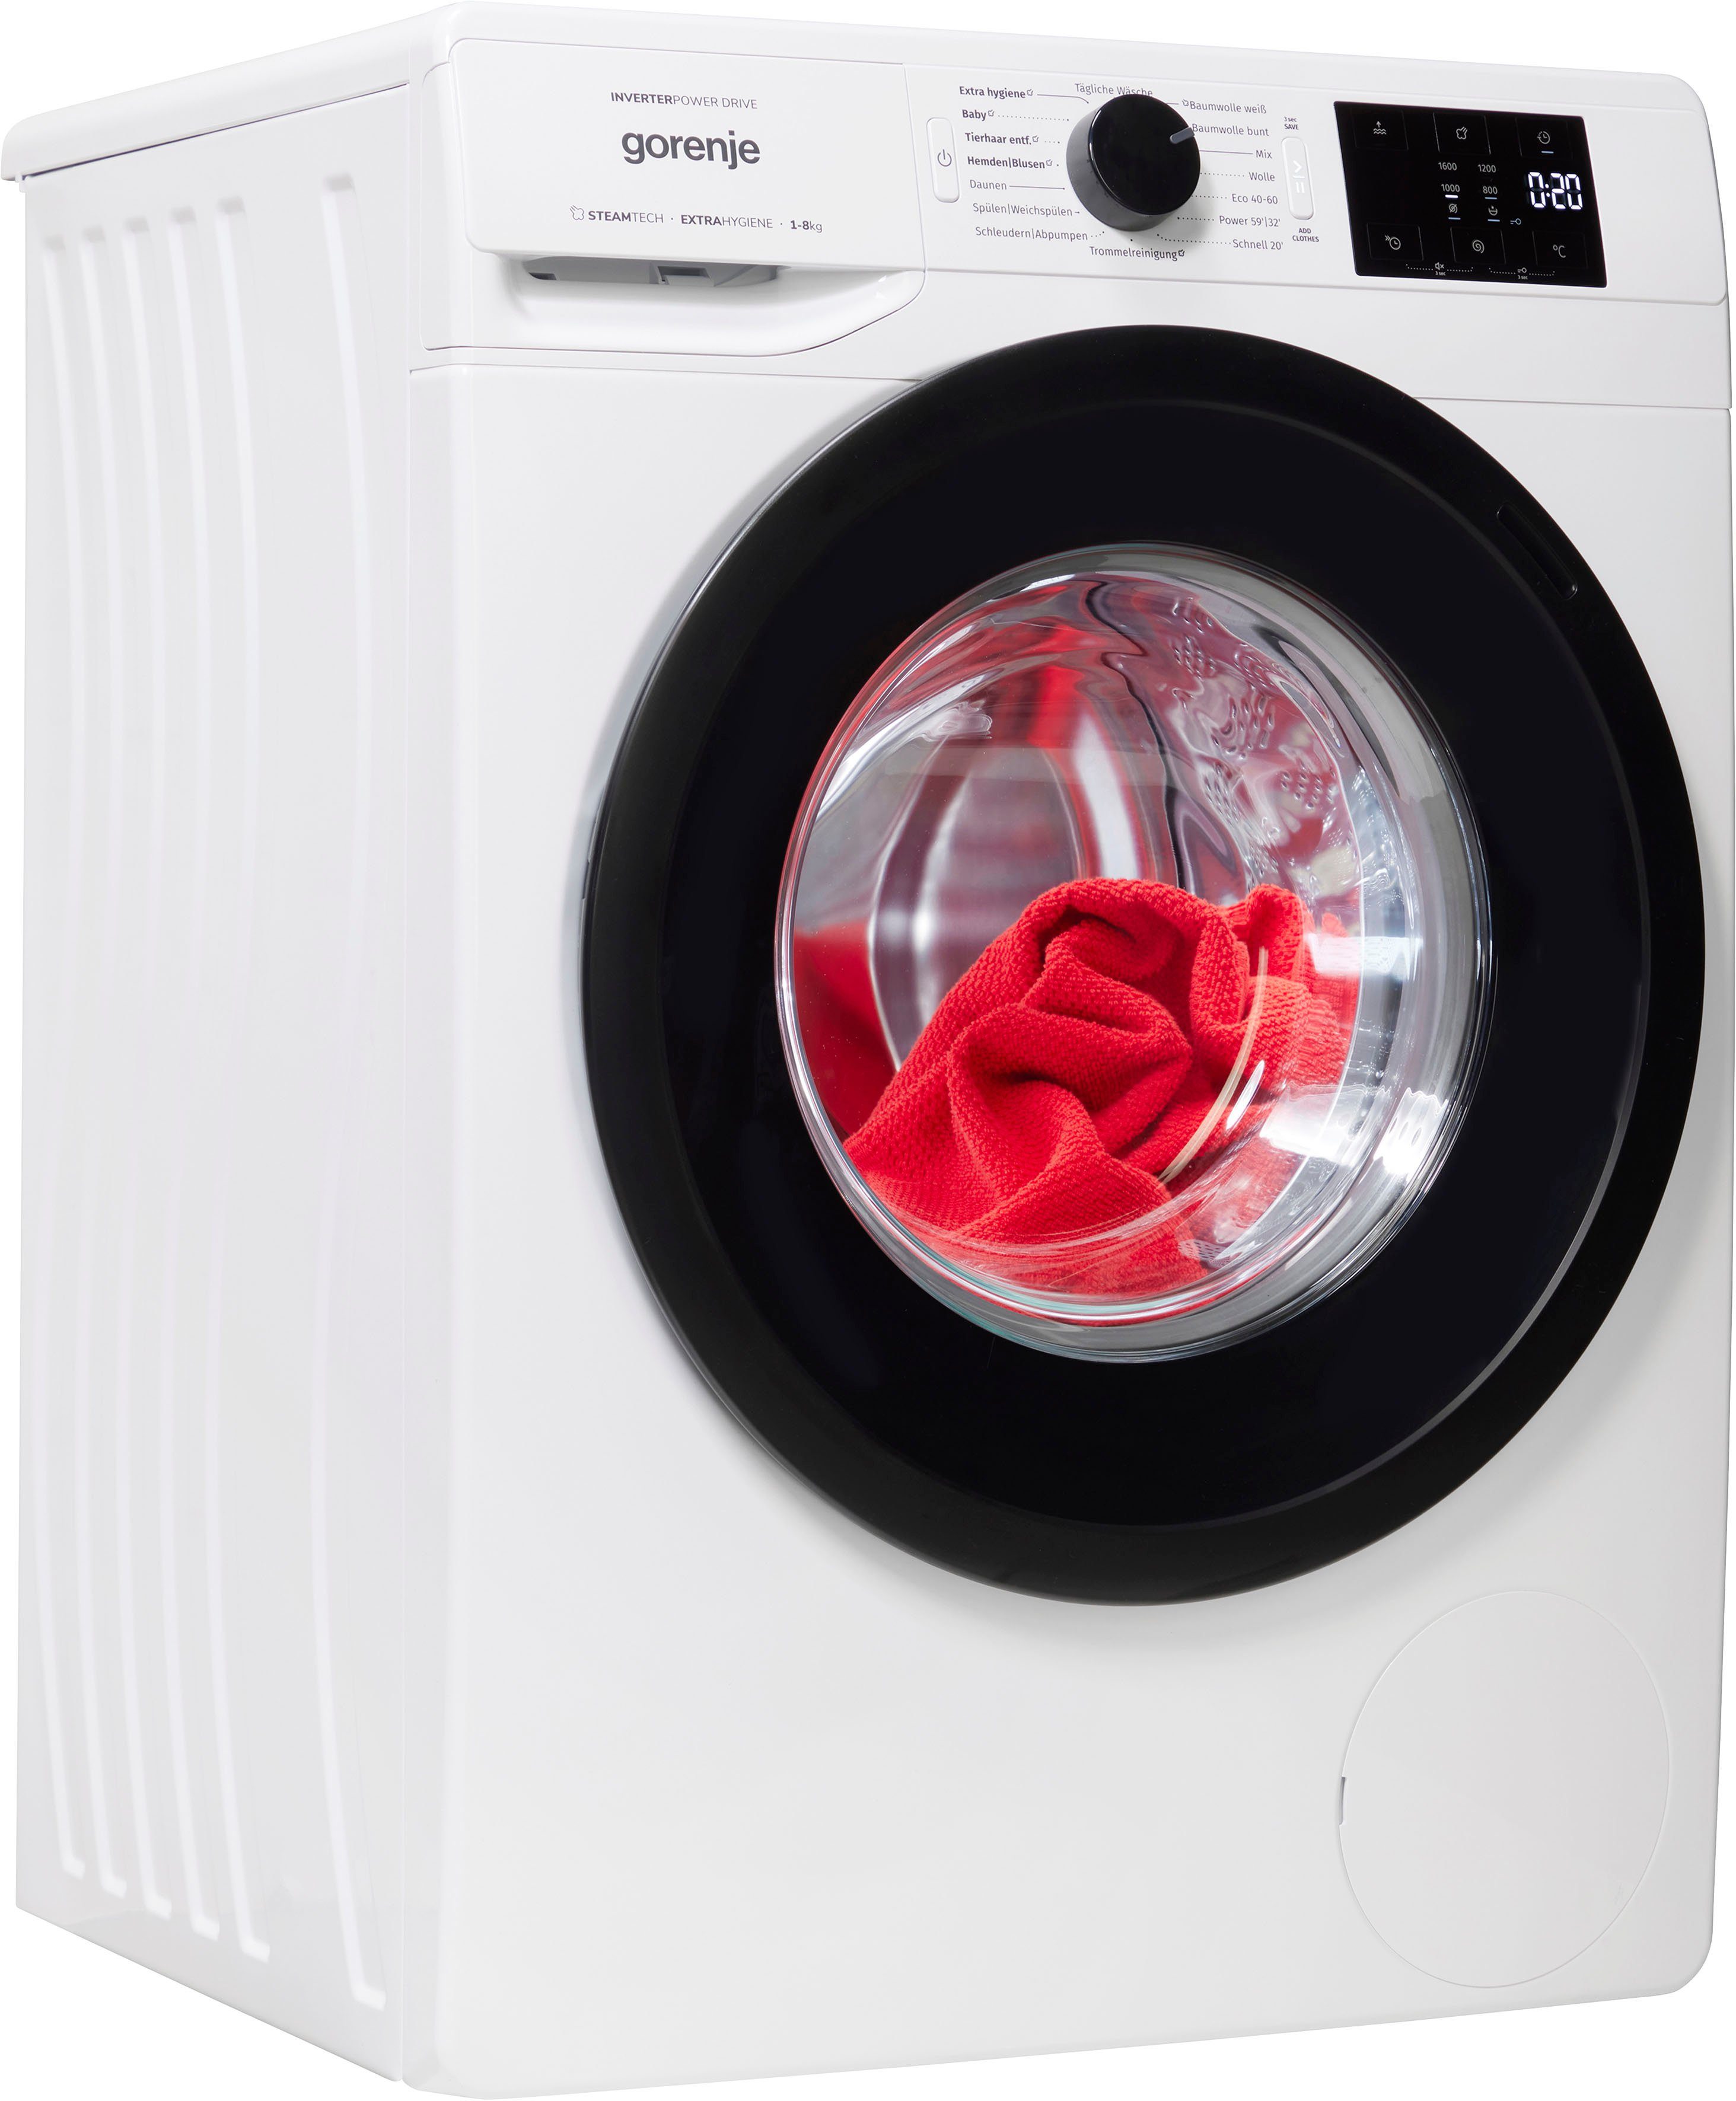 GORENJE Waschmaschine WNEI86APS, 8 kg, 1600 U/min, SterilTub  (Hygiene-Reinigungsprogramm)